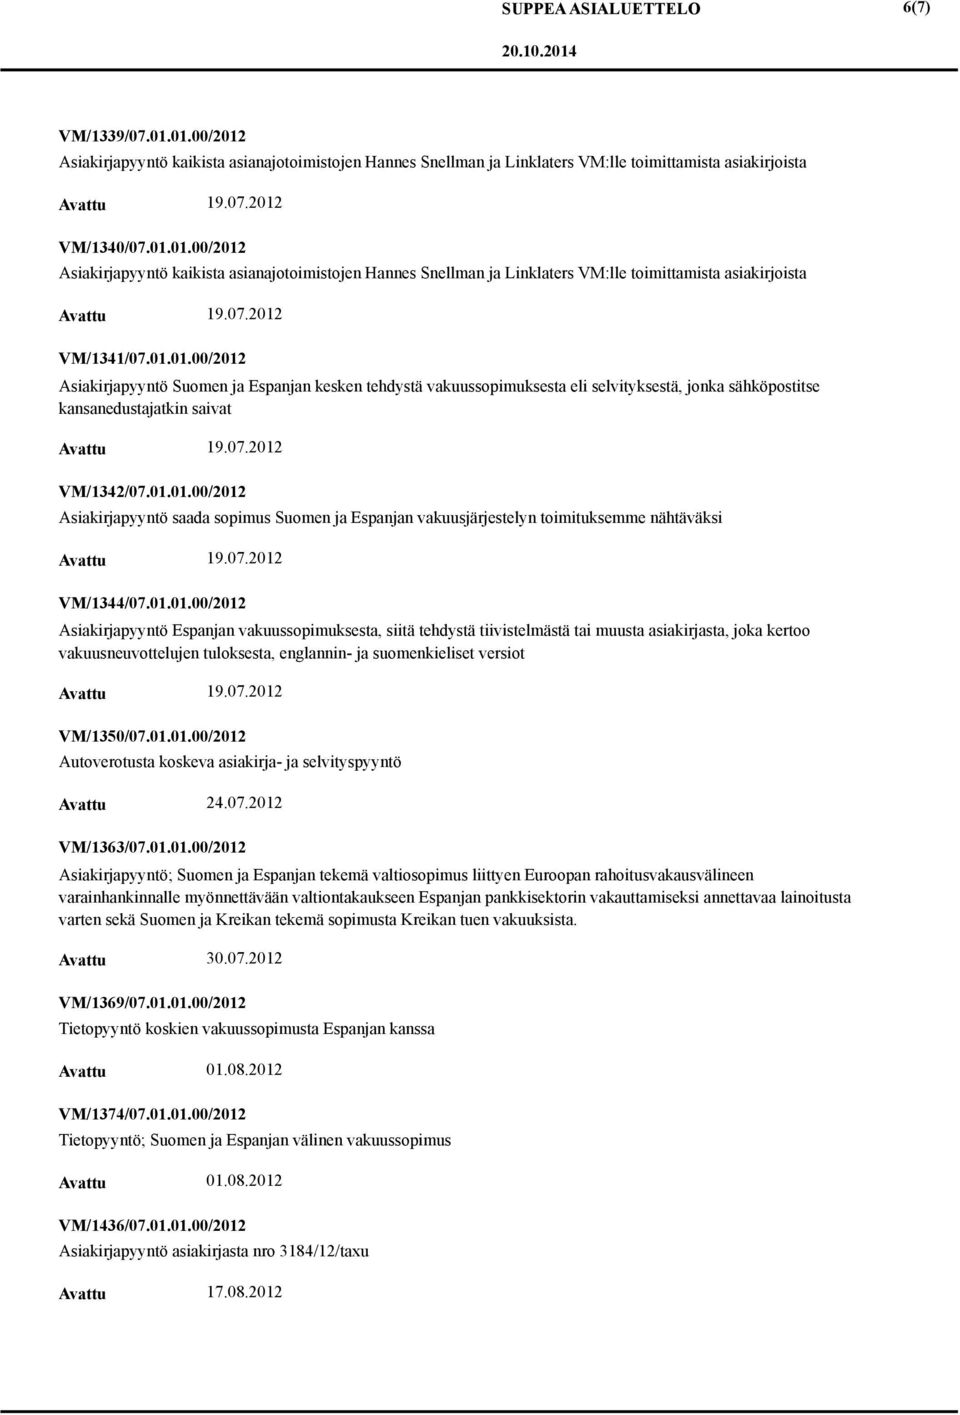 01.01.00/2012 Asiakirjapyyntö Espanjan vakuussopimuksesta, siitä tehdystä tiivistelmästä tai muusta asiakirjasta, joka kertoo vakuusneuvottelujen tuloksesta, englannin- ja suomenkieliset versiot